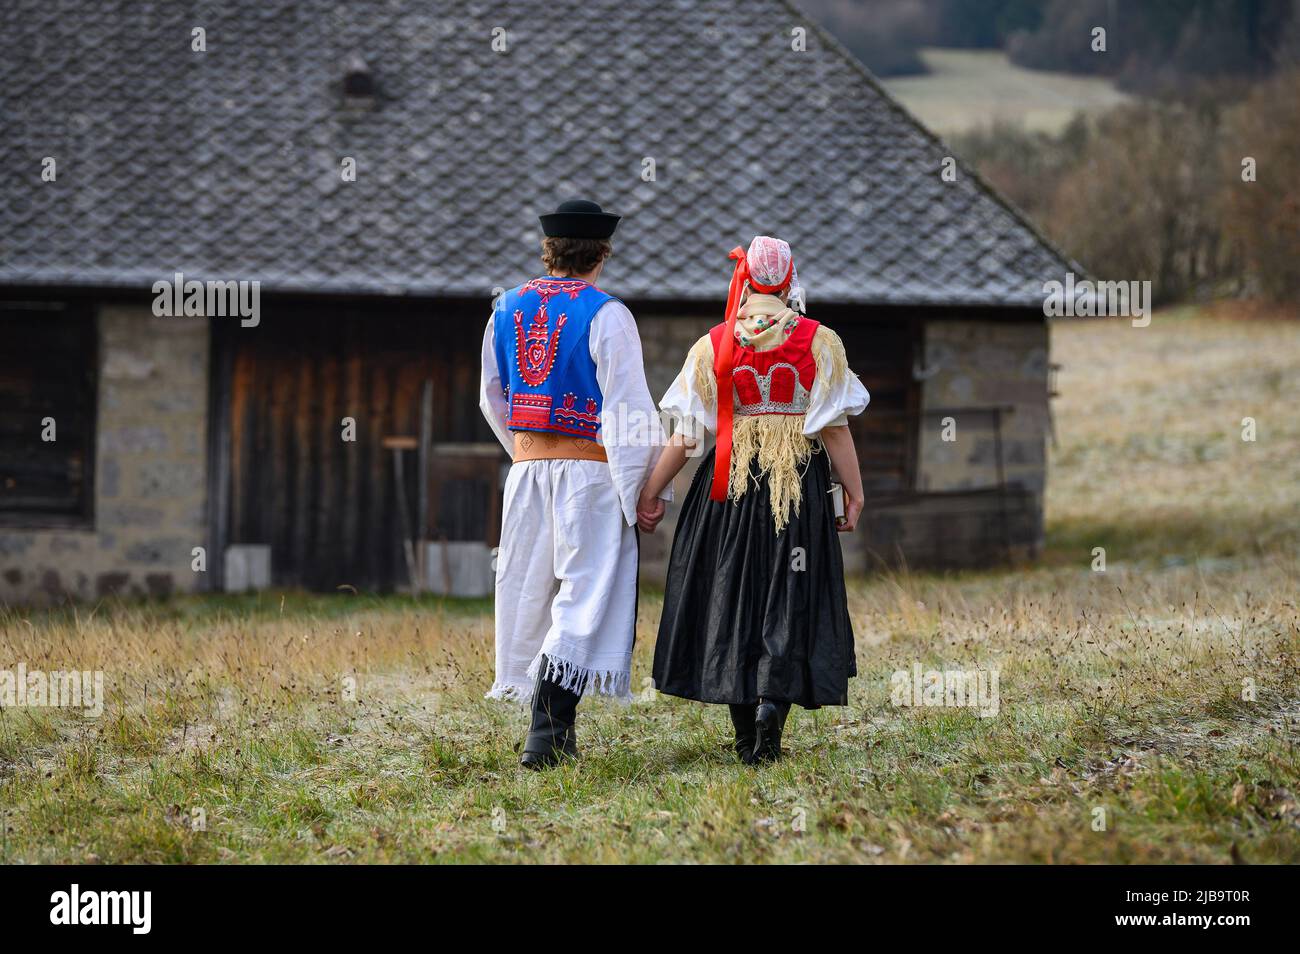 Ein Paar in traditioneller Tracht. Slowakische Kostüm im Herbst Natur.  Altes Landhaus im Hintergrund. Junges Paar in Tracht Wal Stockfotografie -  Alamy